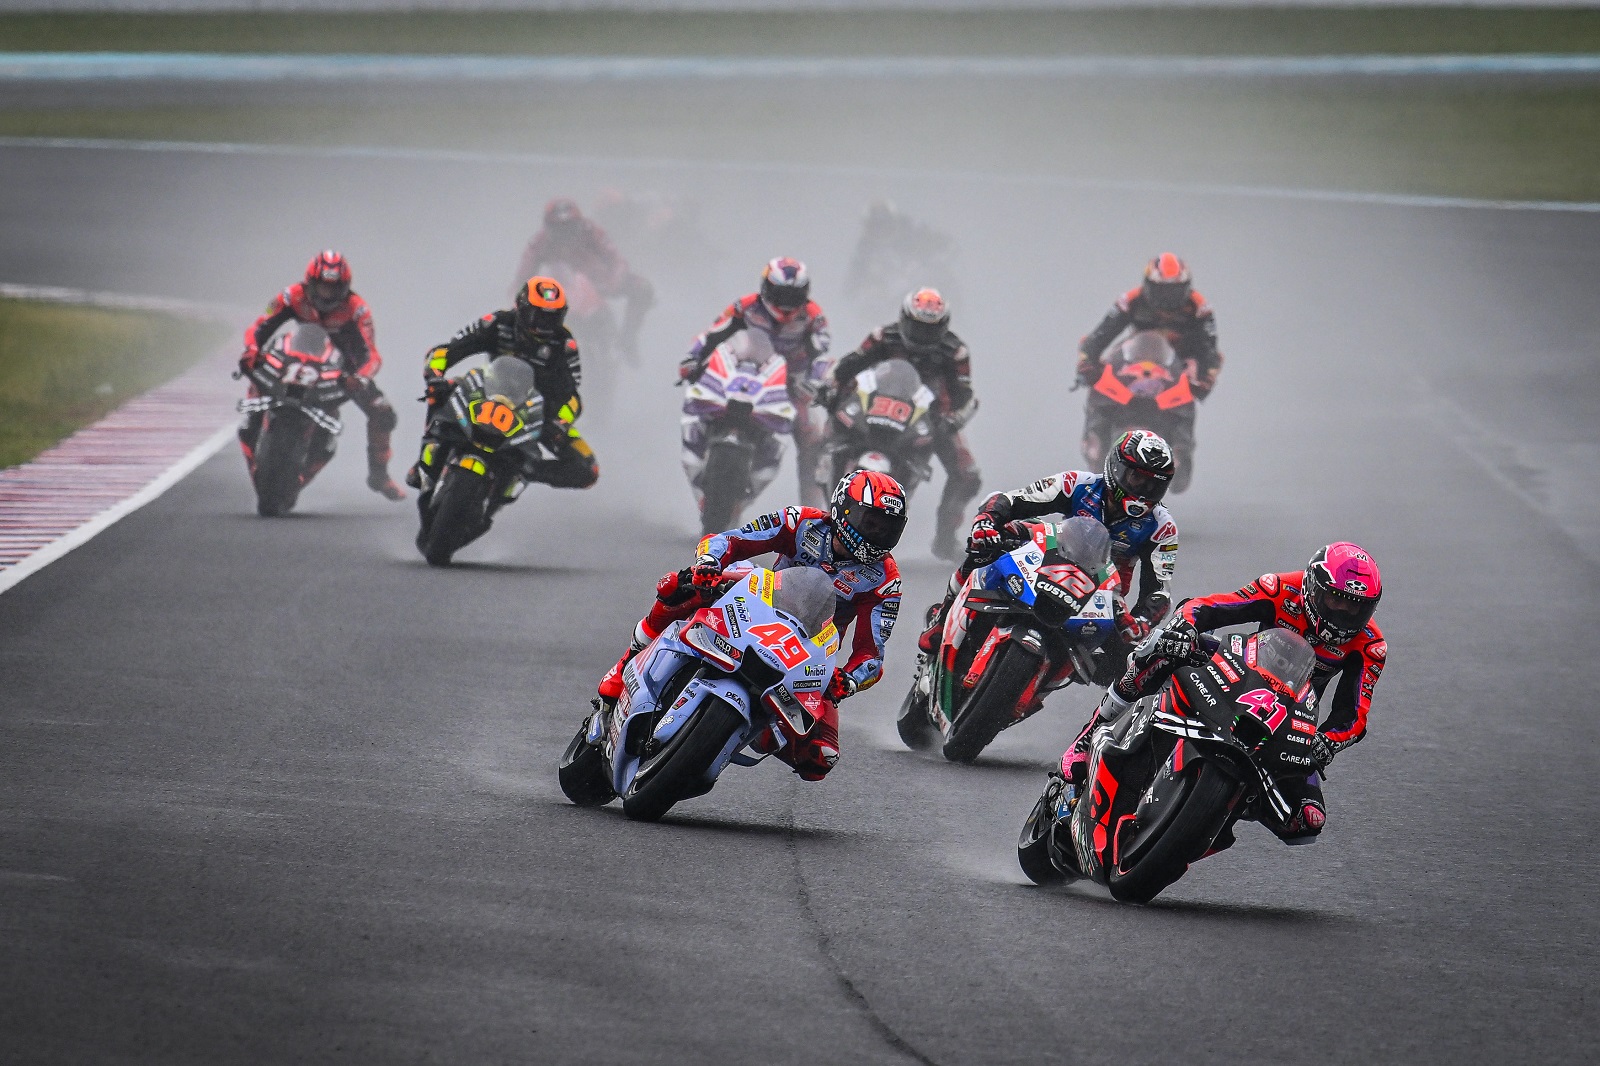 MotoGP divulga calendário de 2023 com 21 etapas - Notícia de MotoGP -  Grande Prêmio